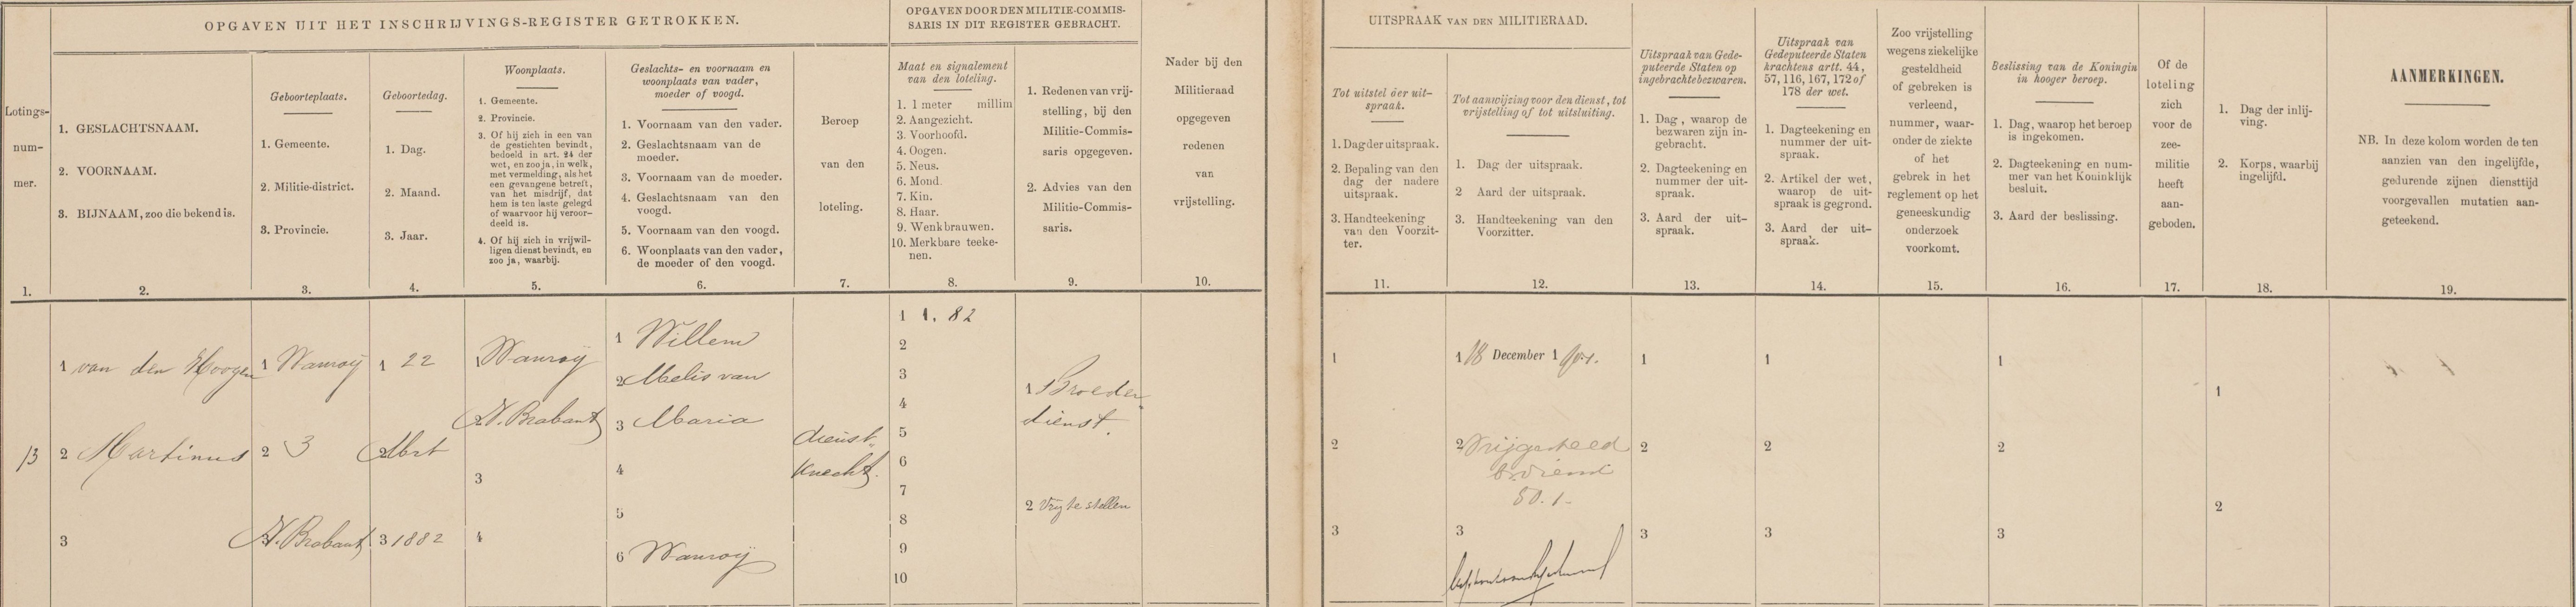 Lotingsregisters,vanaf 1867-1911 tevens van de gemeente Wanroij , lichtingsjaren, 1901-1910 Martinus van den Hoogen